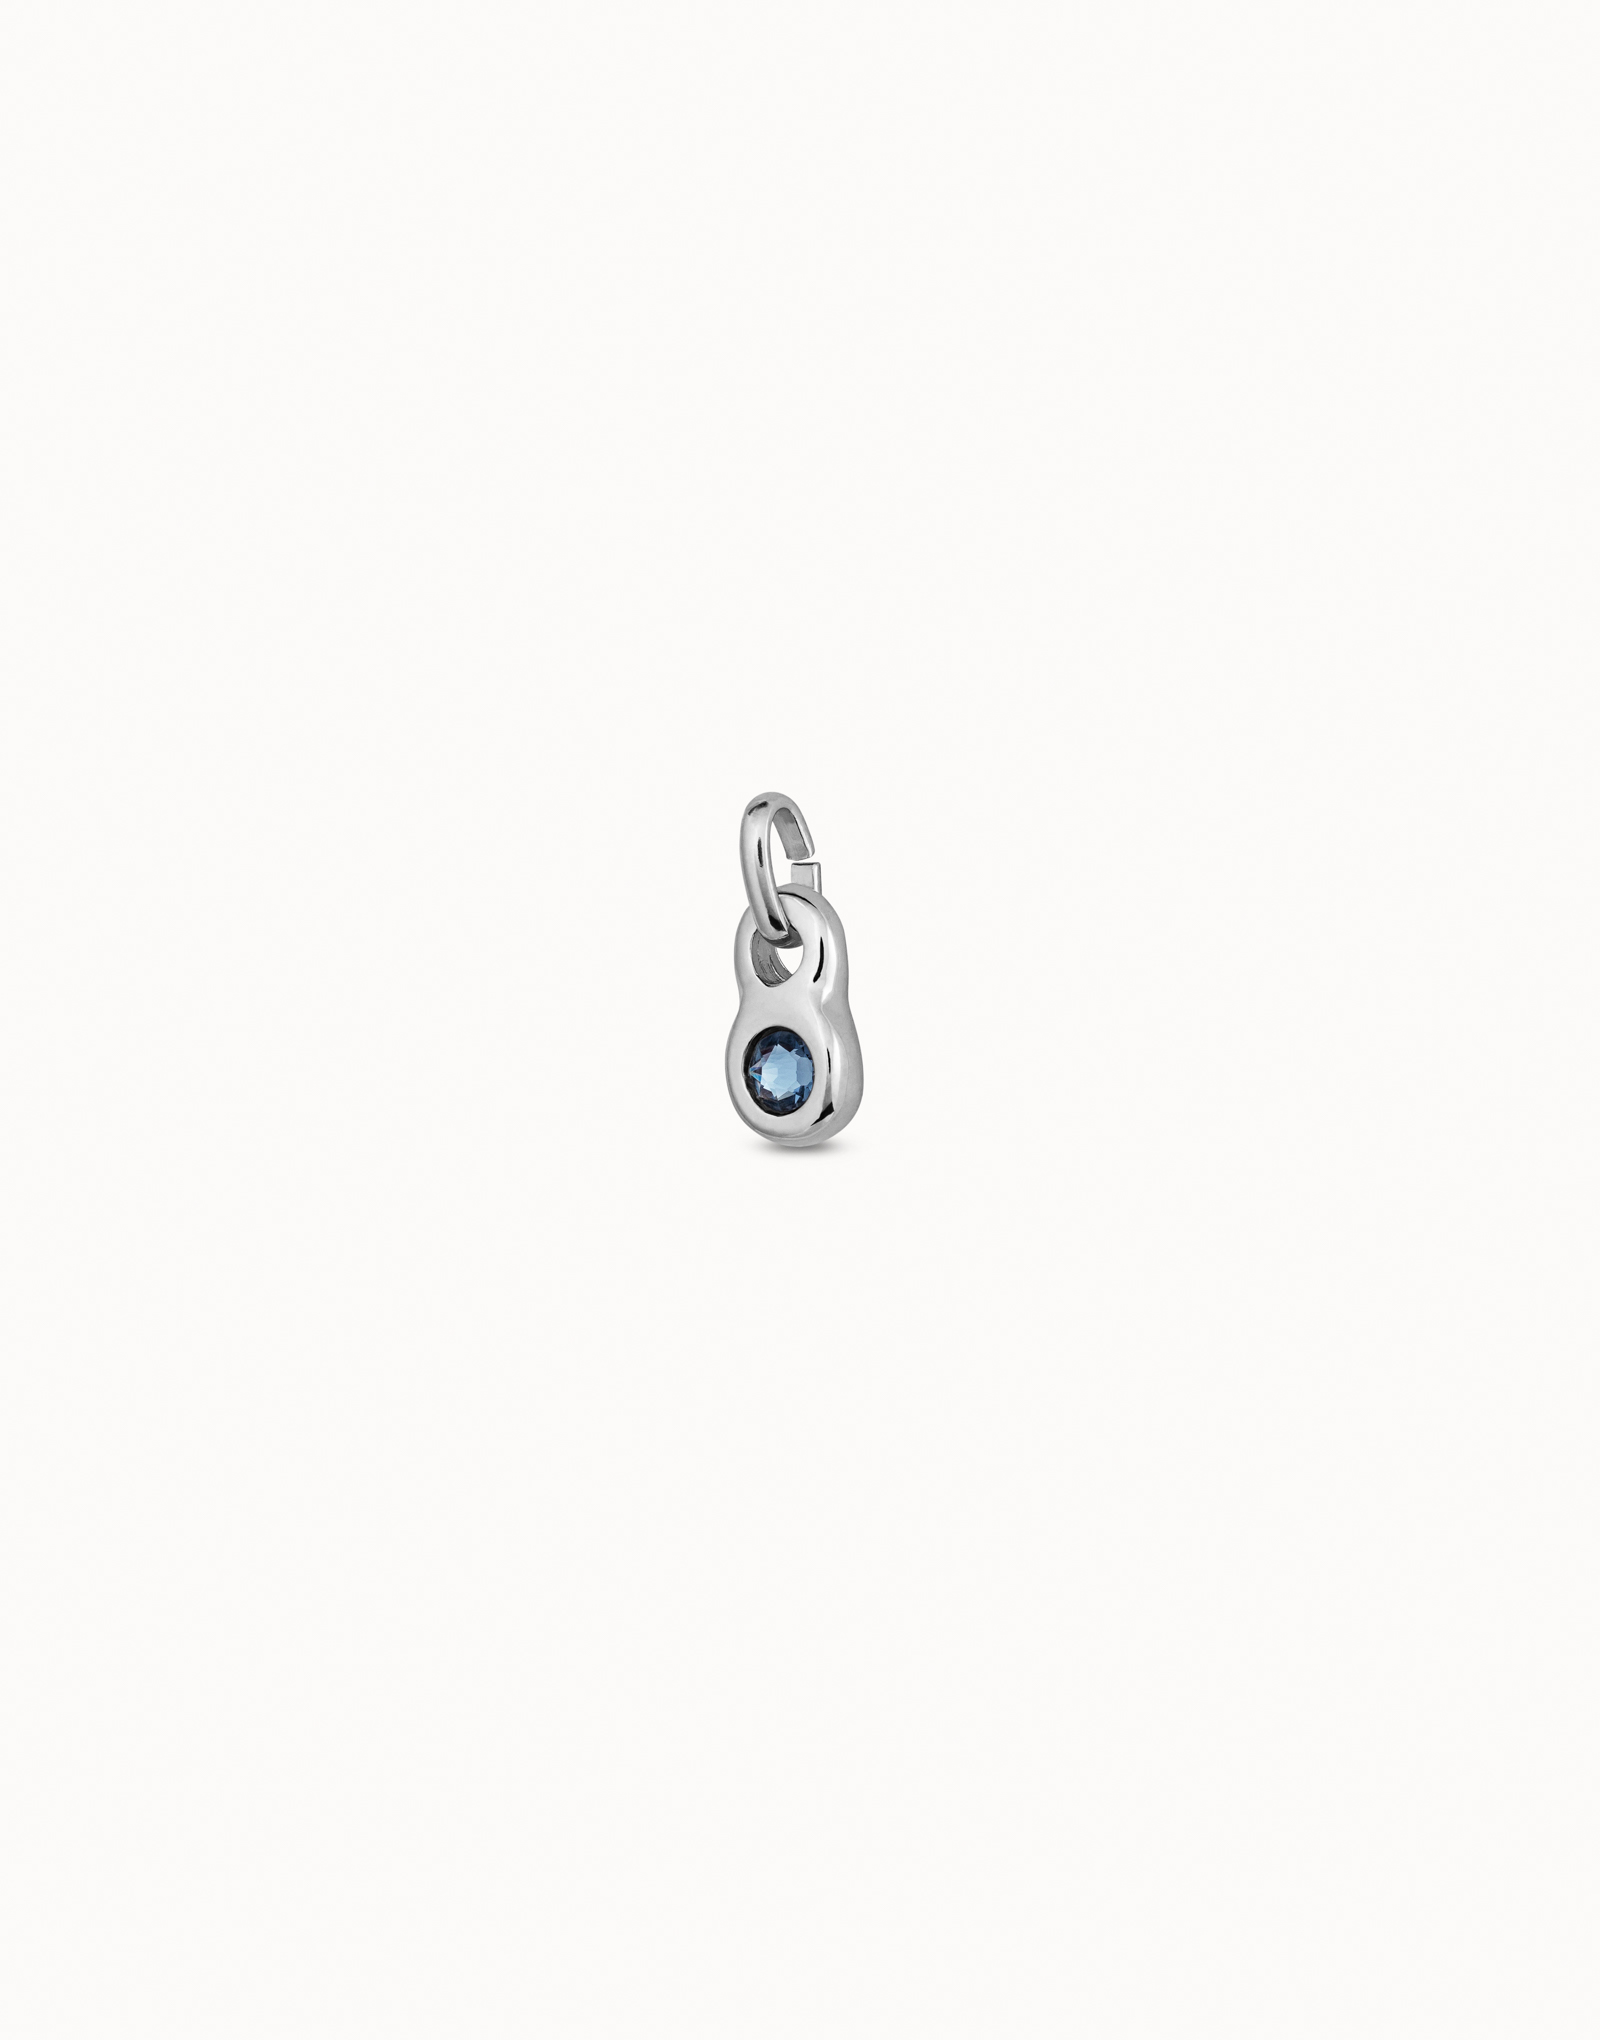 Charm bañado en plata de ley con forma redonda y un cristal azul, Plateado, large image number null